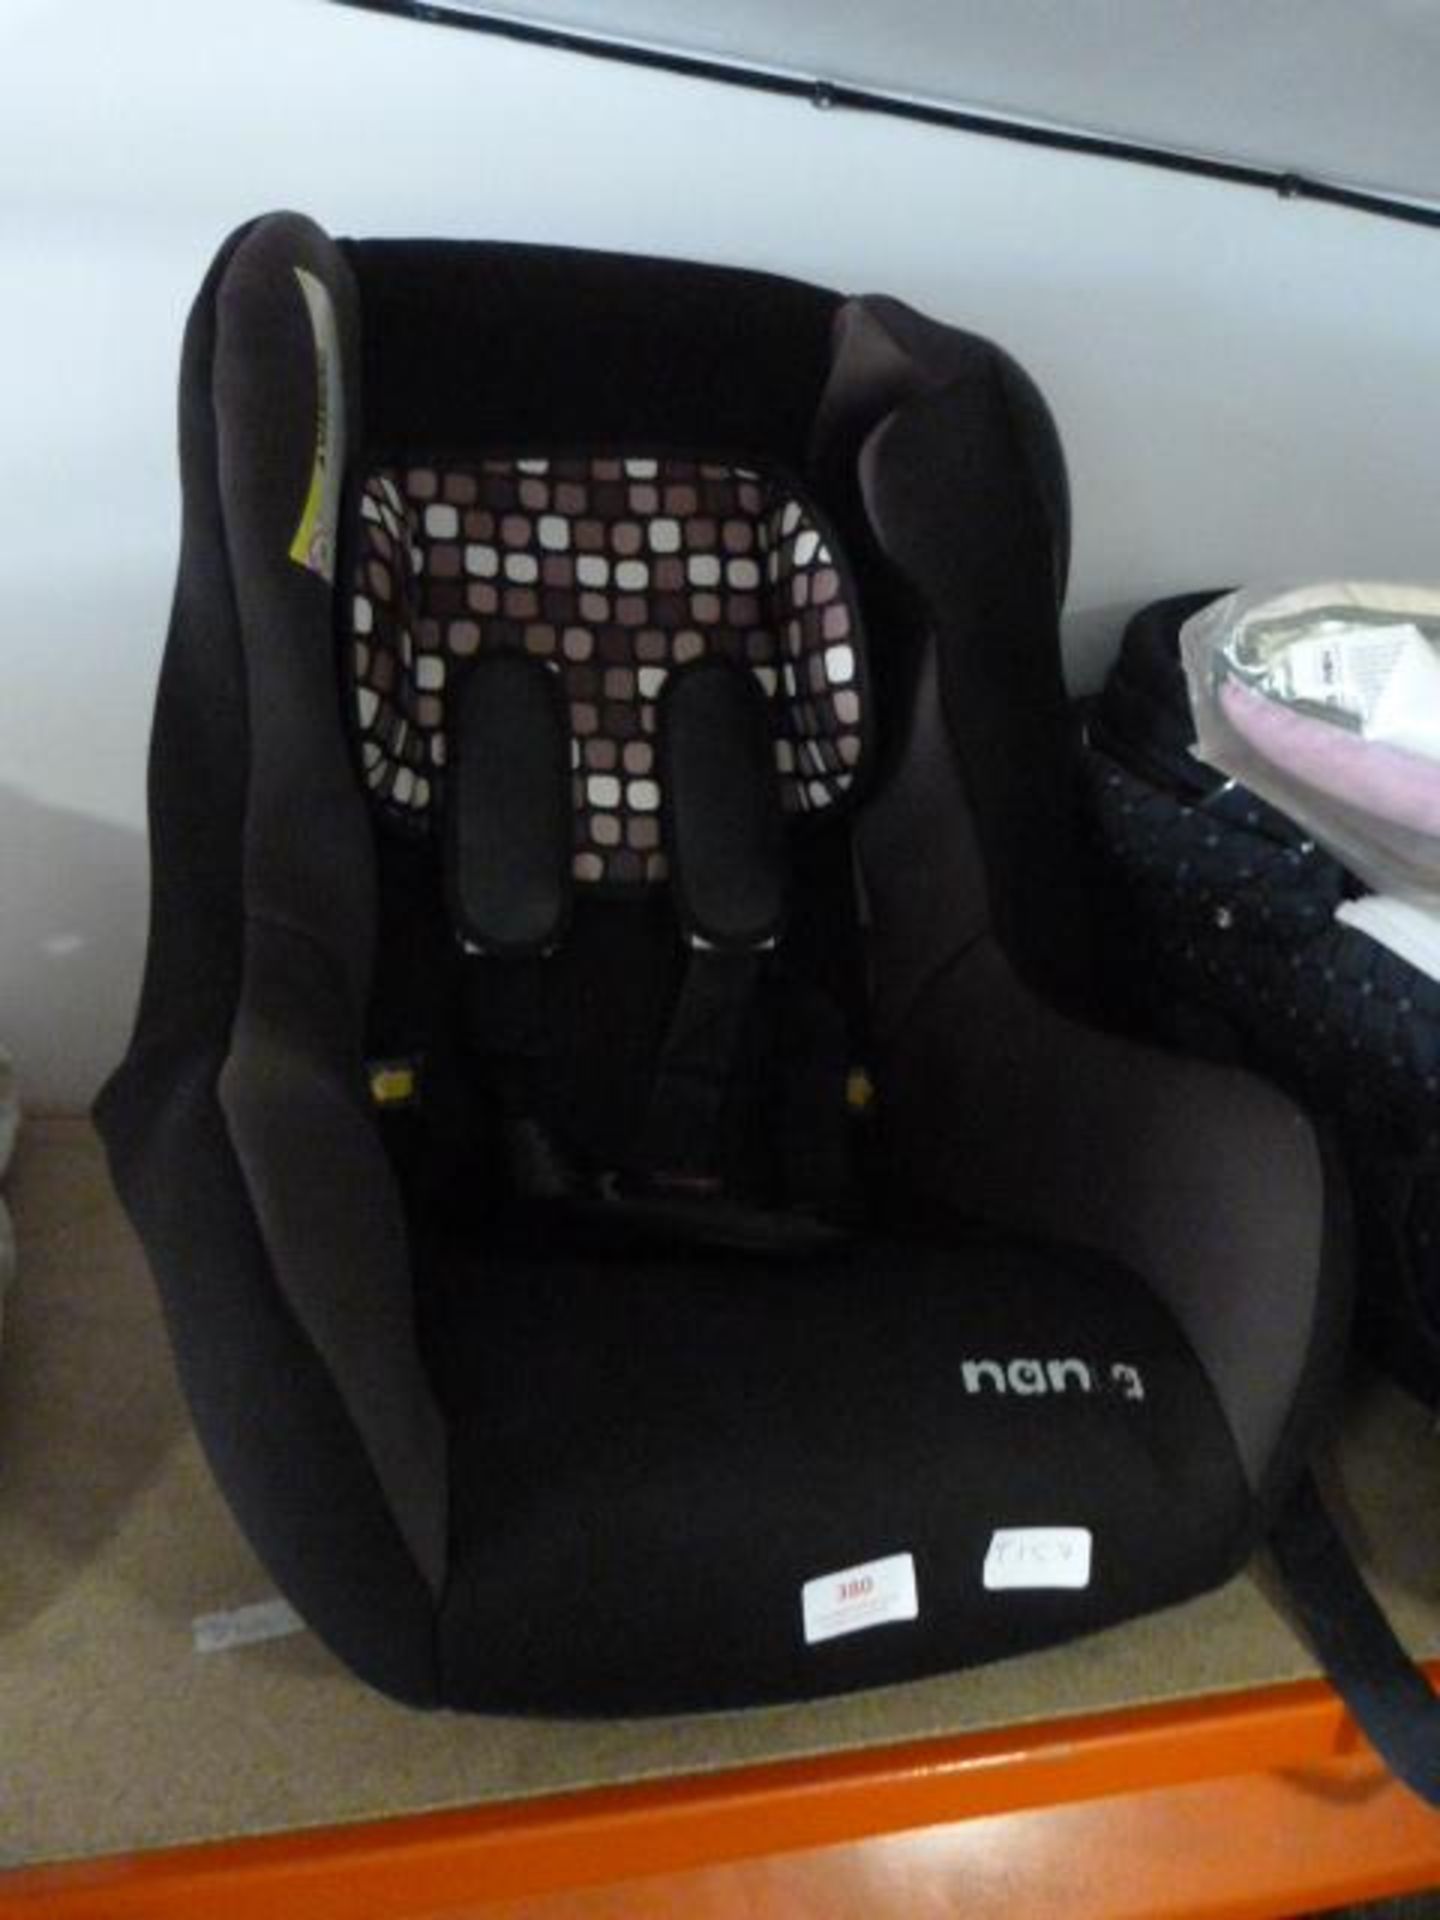 Nania Child's Seat